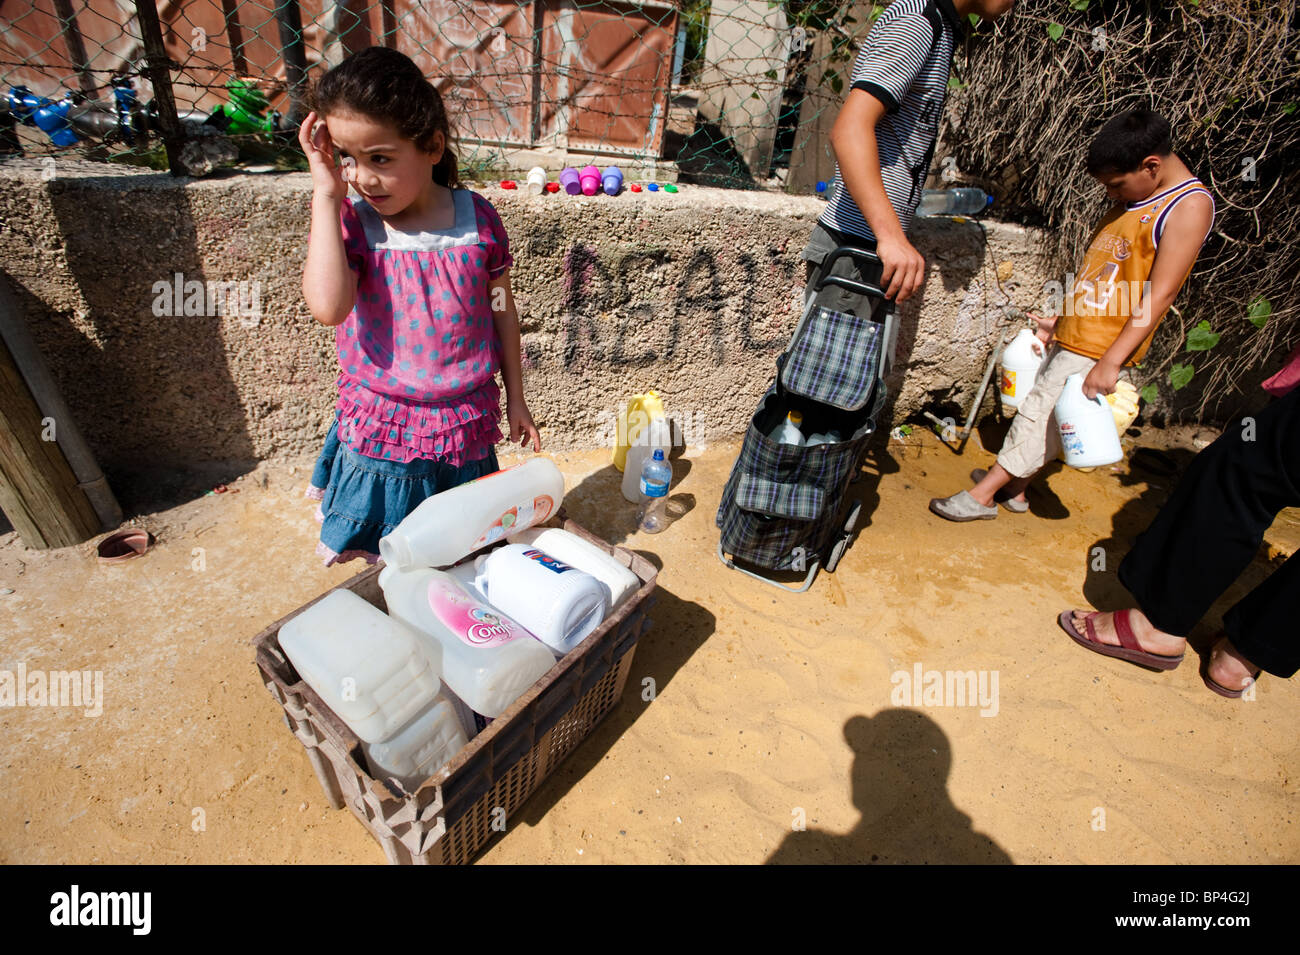 Campo profughi palestinese i bambini riempiono le bottiglie di plastica in corrispondenza di un rubinetto pubblico a causa delle restrizioni israeliane sull uso di acqua Foto Stock